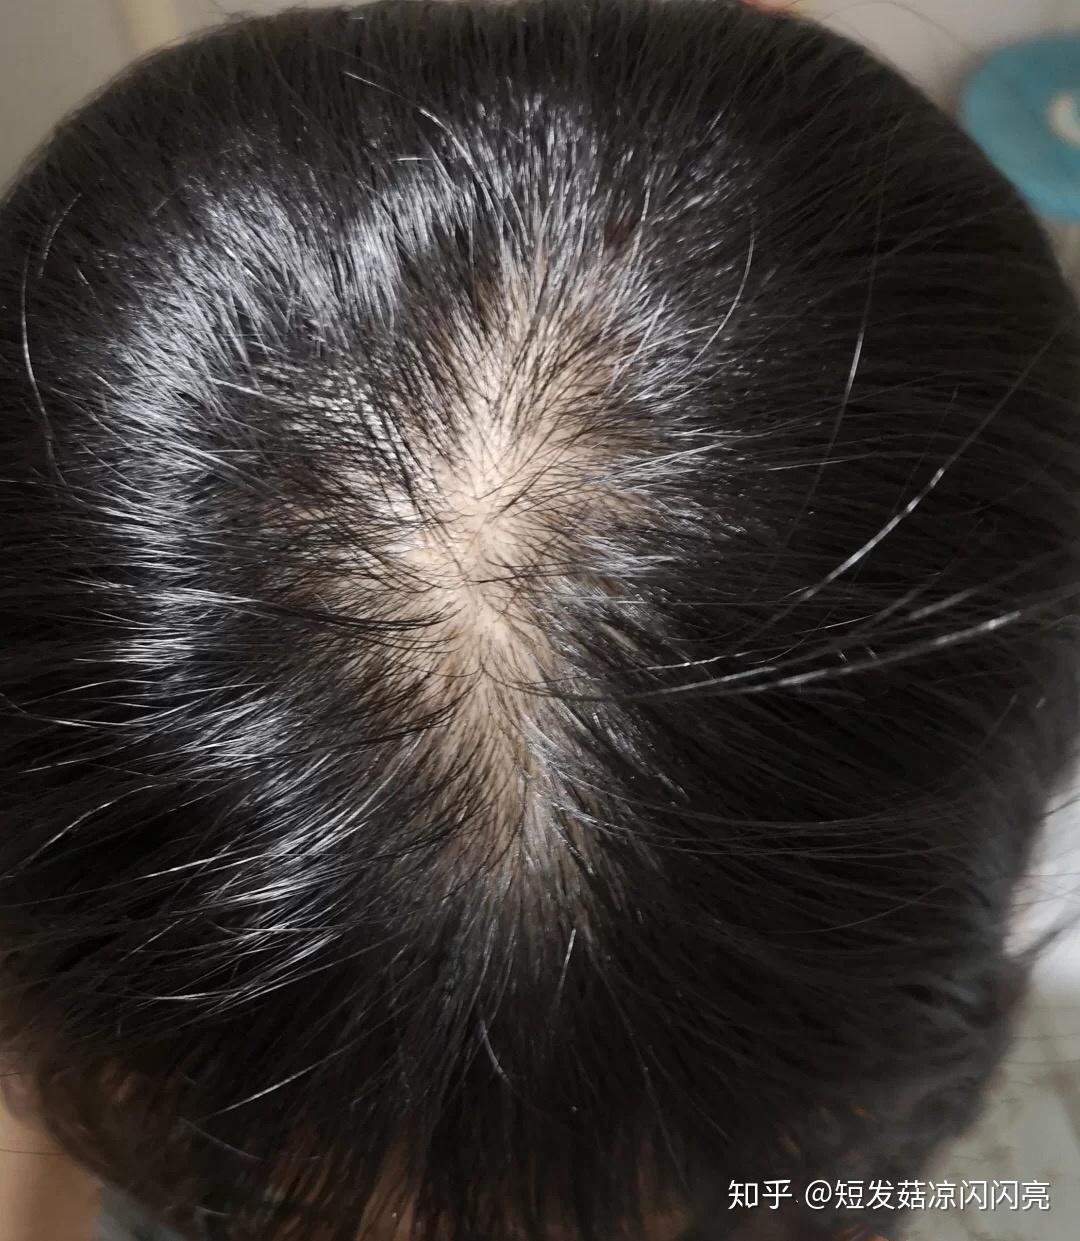 脂溢性脱发有哪些表现特征？ - 知乎